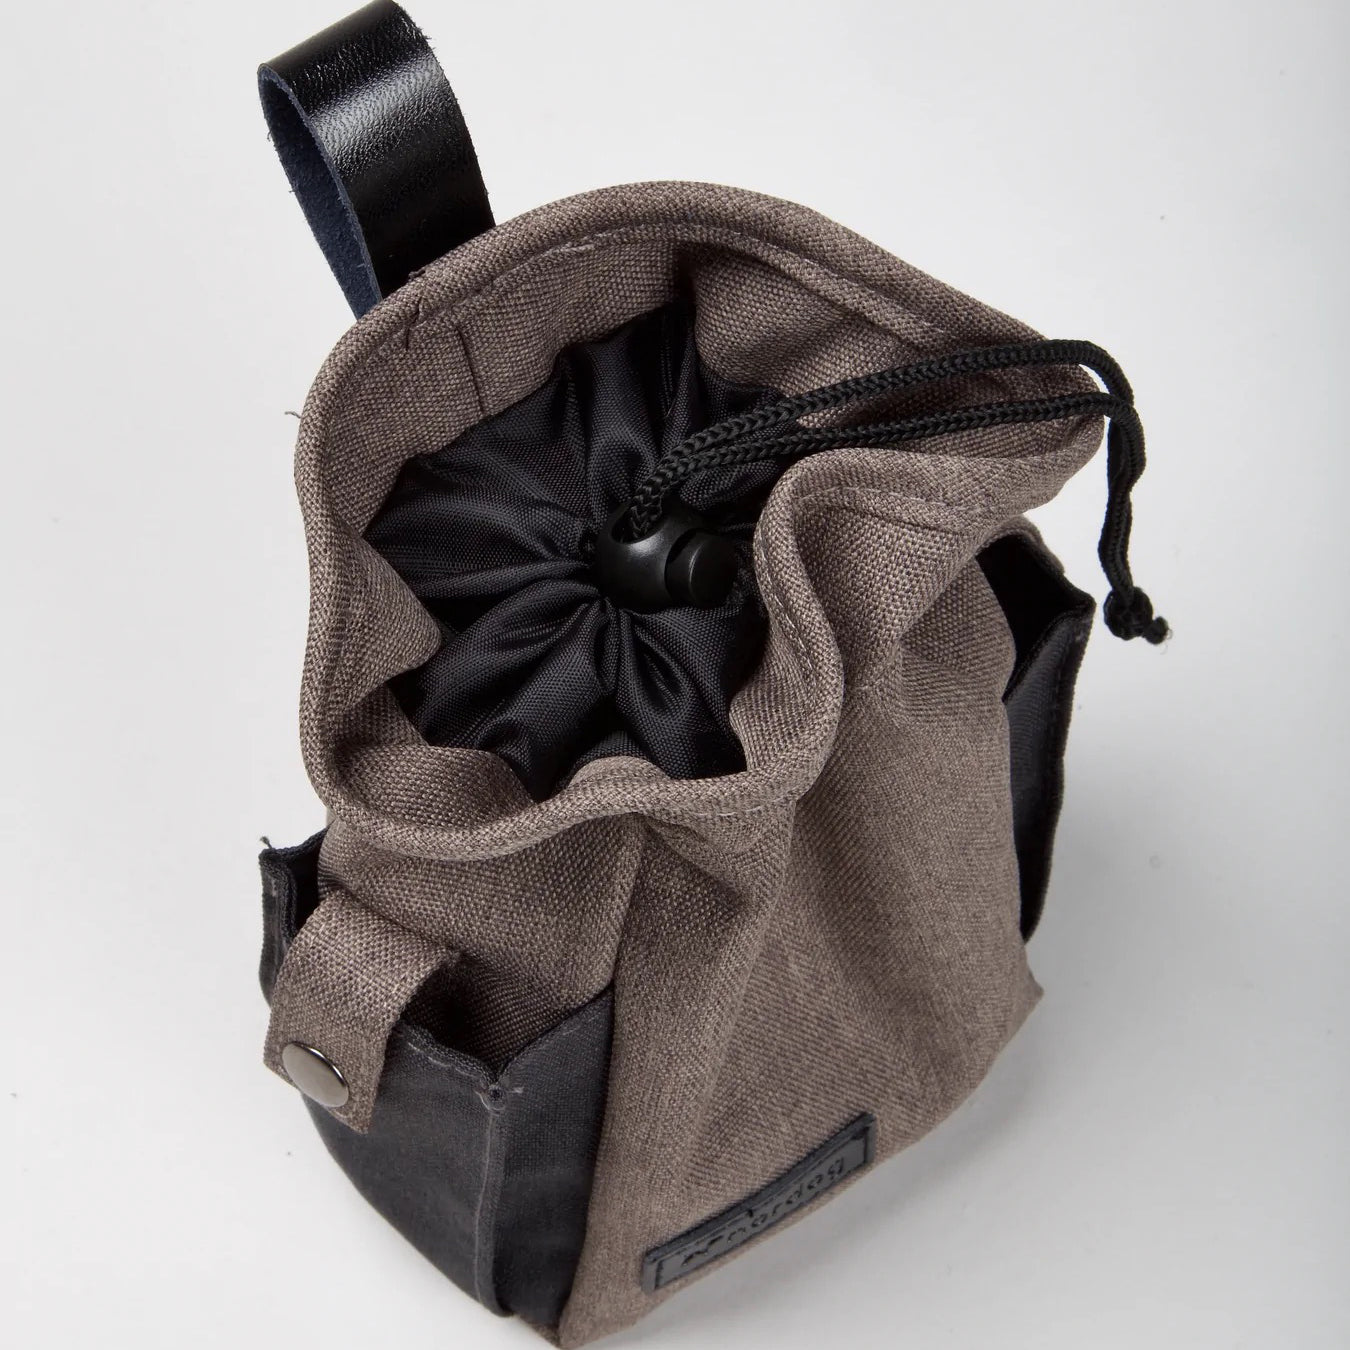 NORDOG "Tenne" die funktionale Leckerli-Tasche mit vielen nützlichen Funktionen